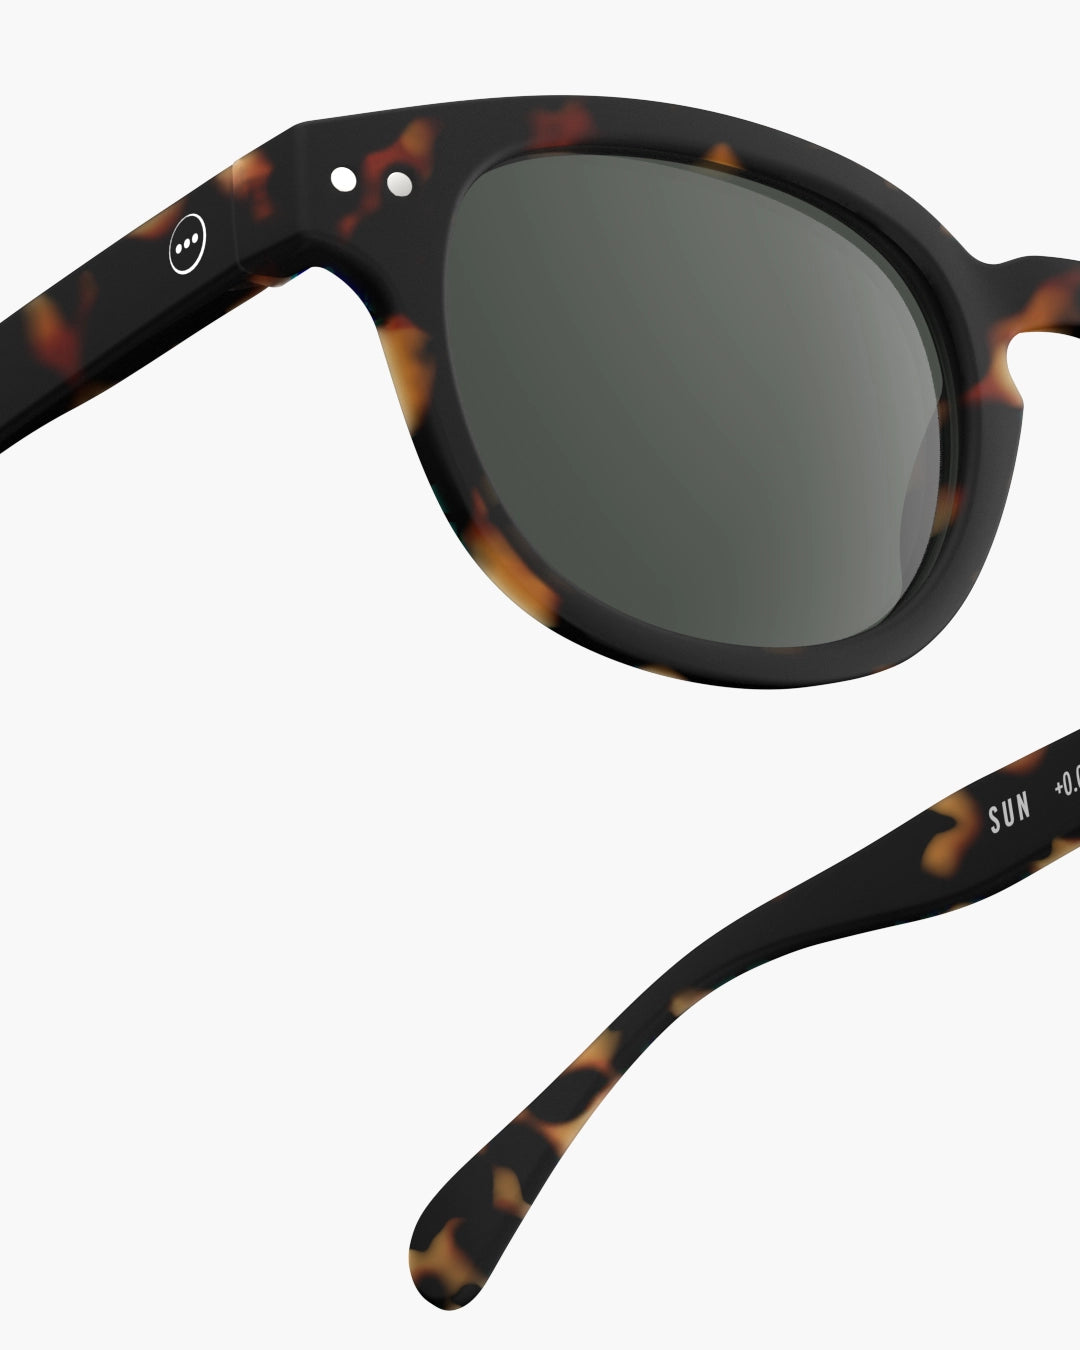 Sunglasses ‘Tortoise’ #C